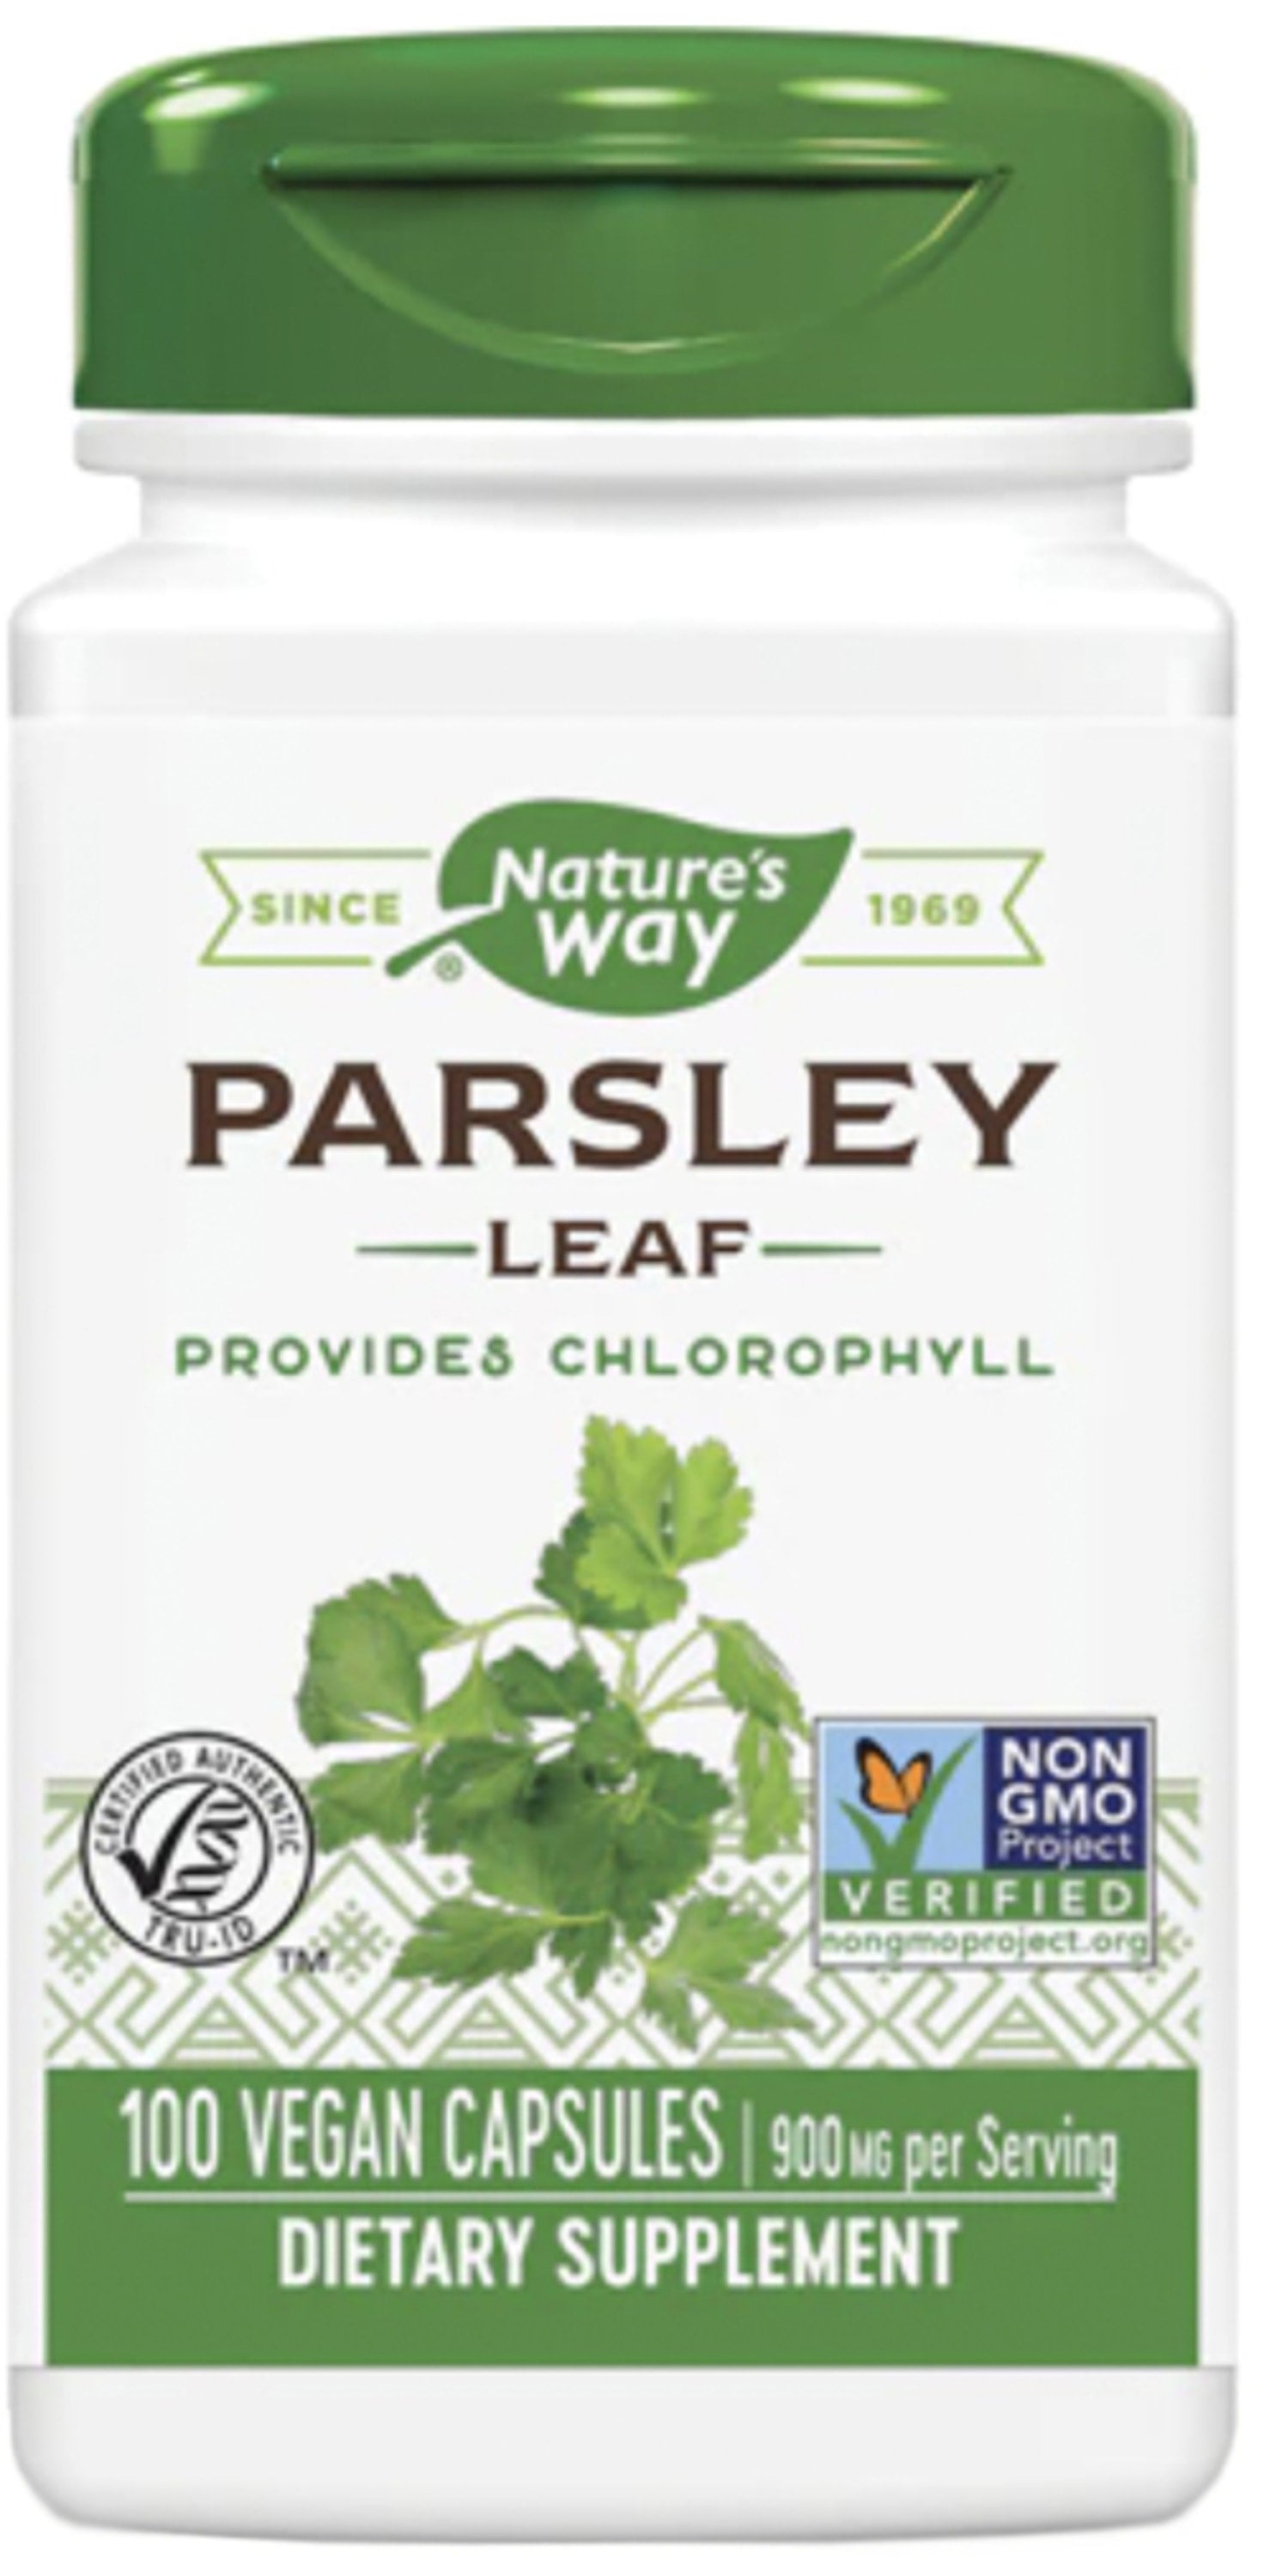 Parsley Leaf, 900 mg (per serving), 100 Vegan Capsules